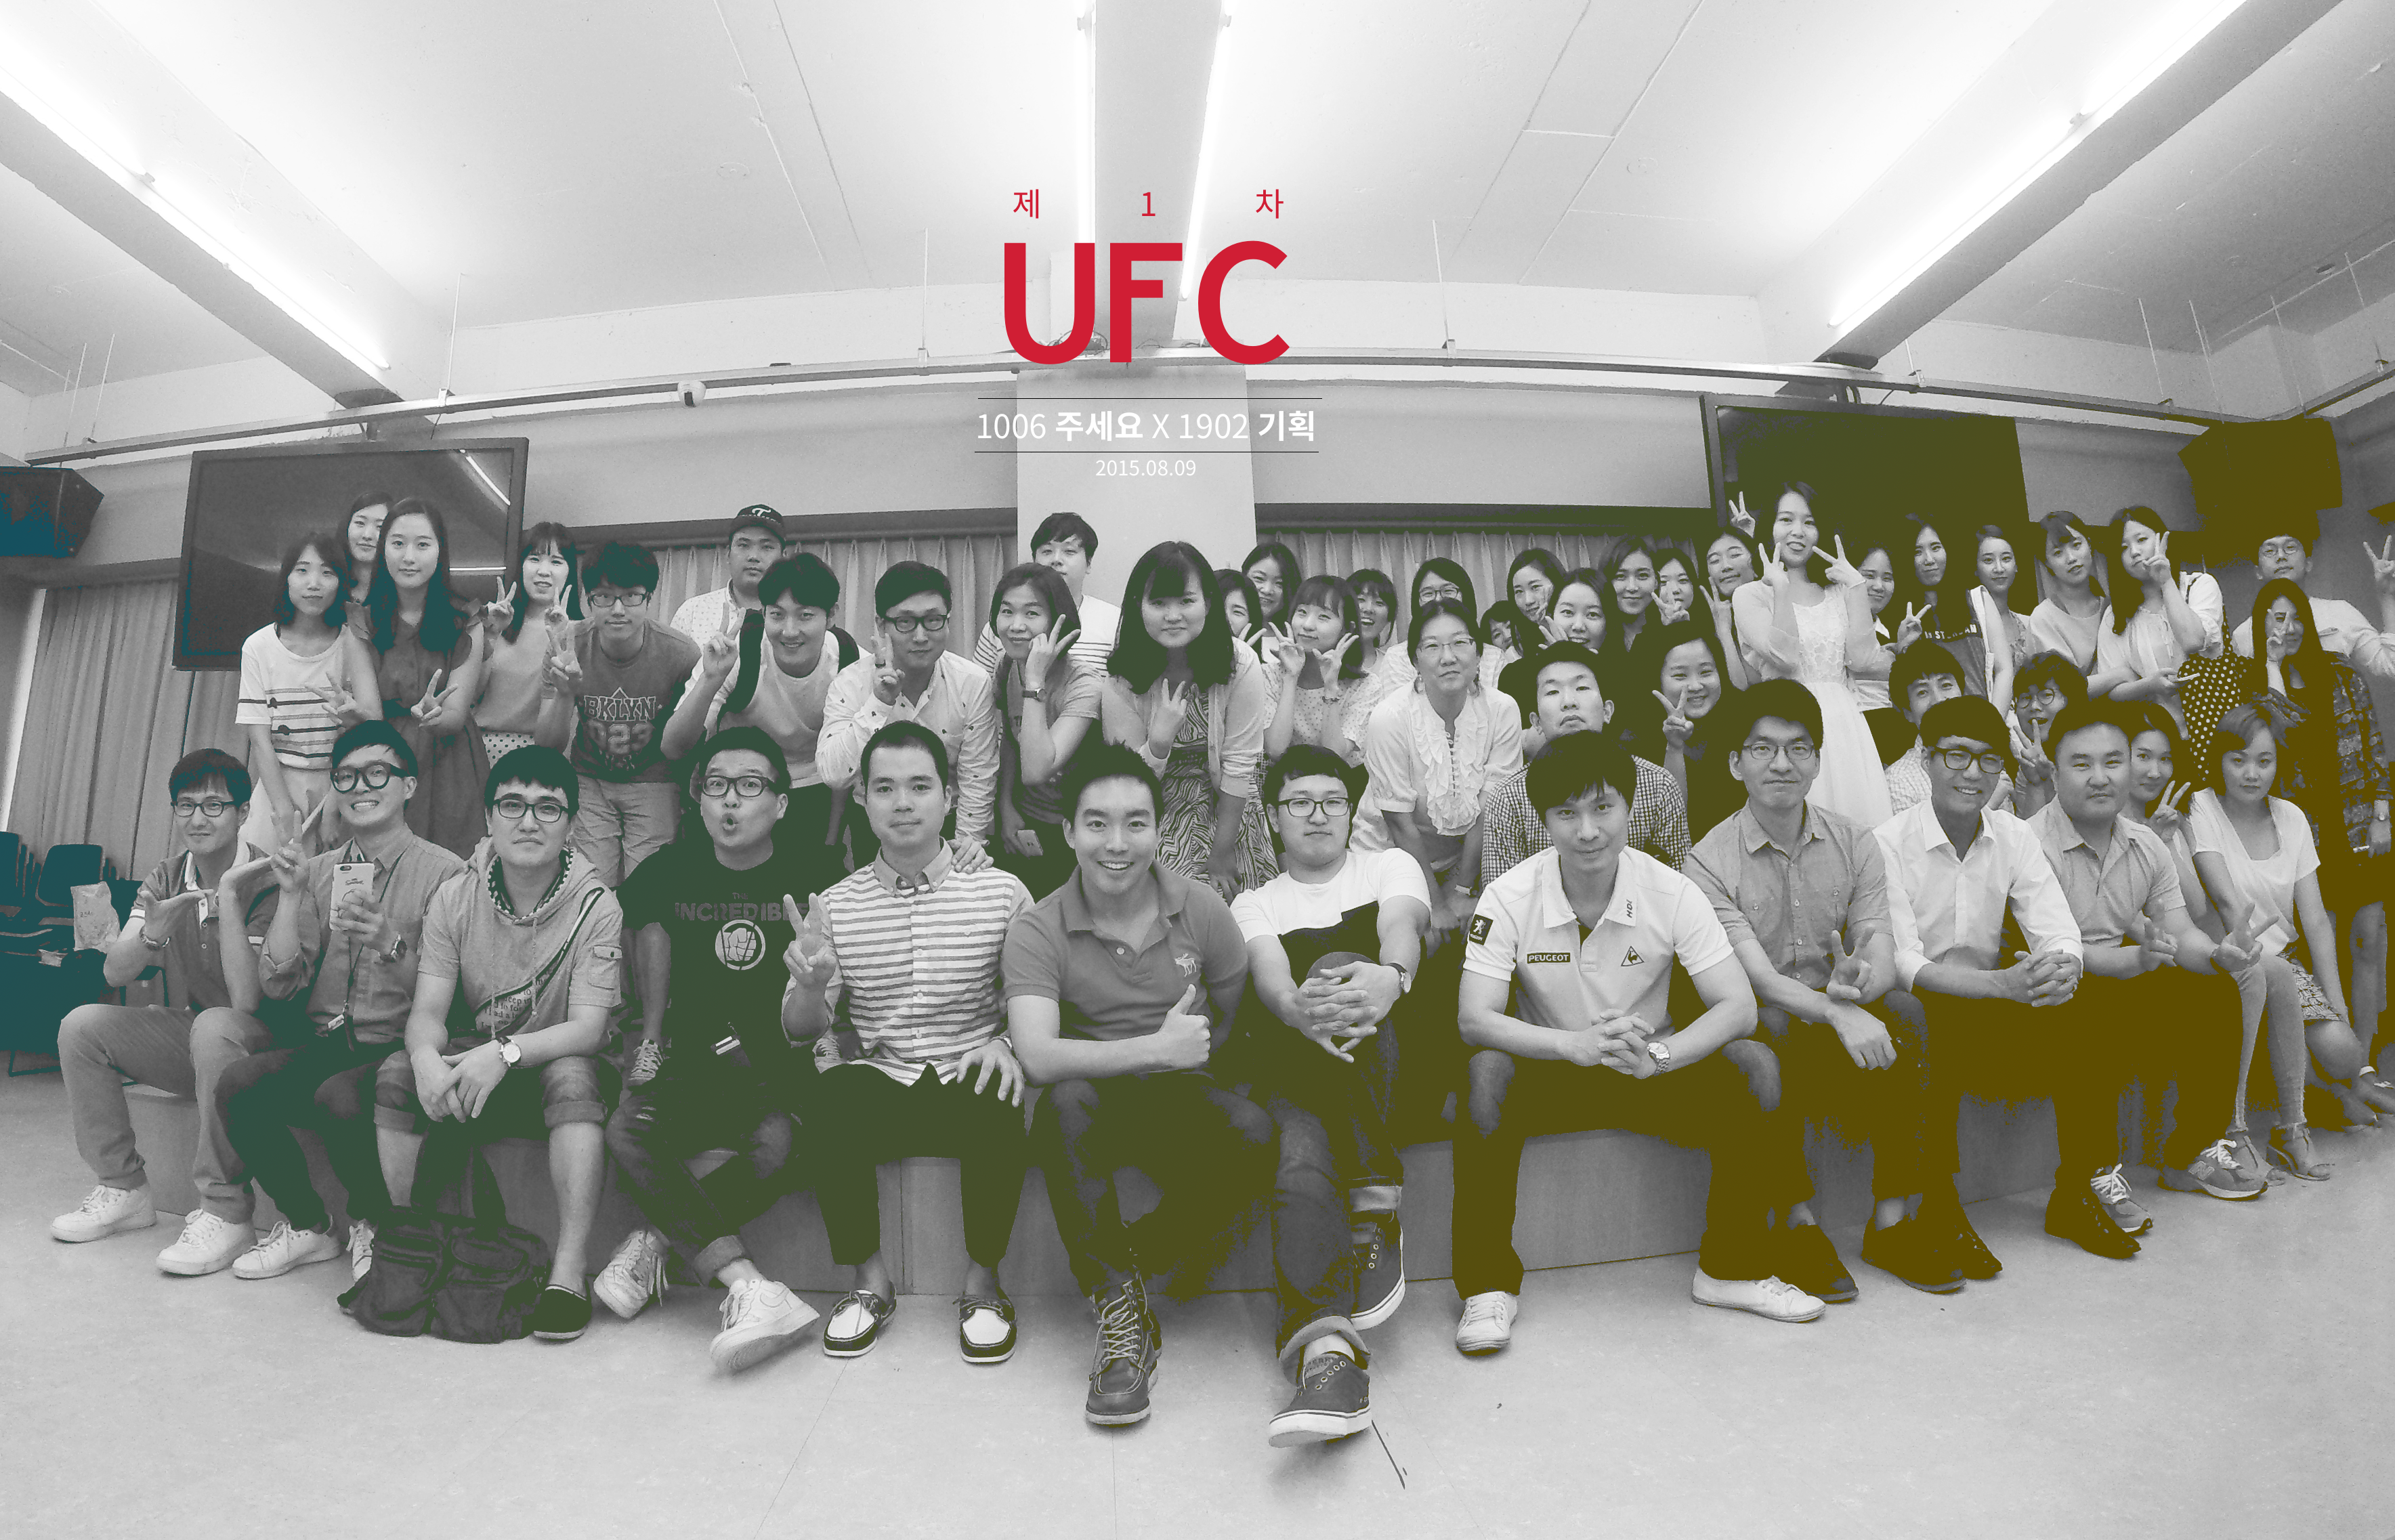 2015.08.09 기획2팀 UFC.png